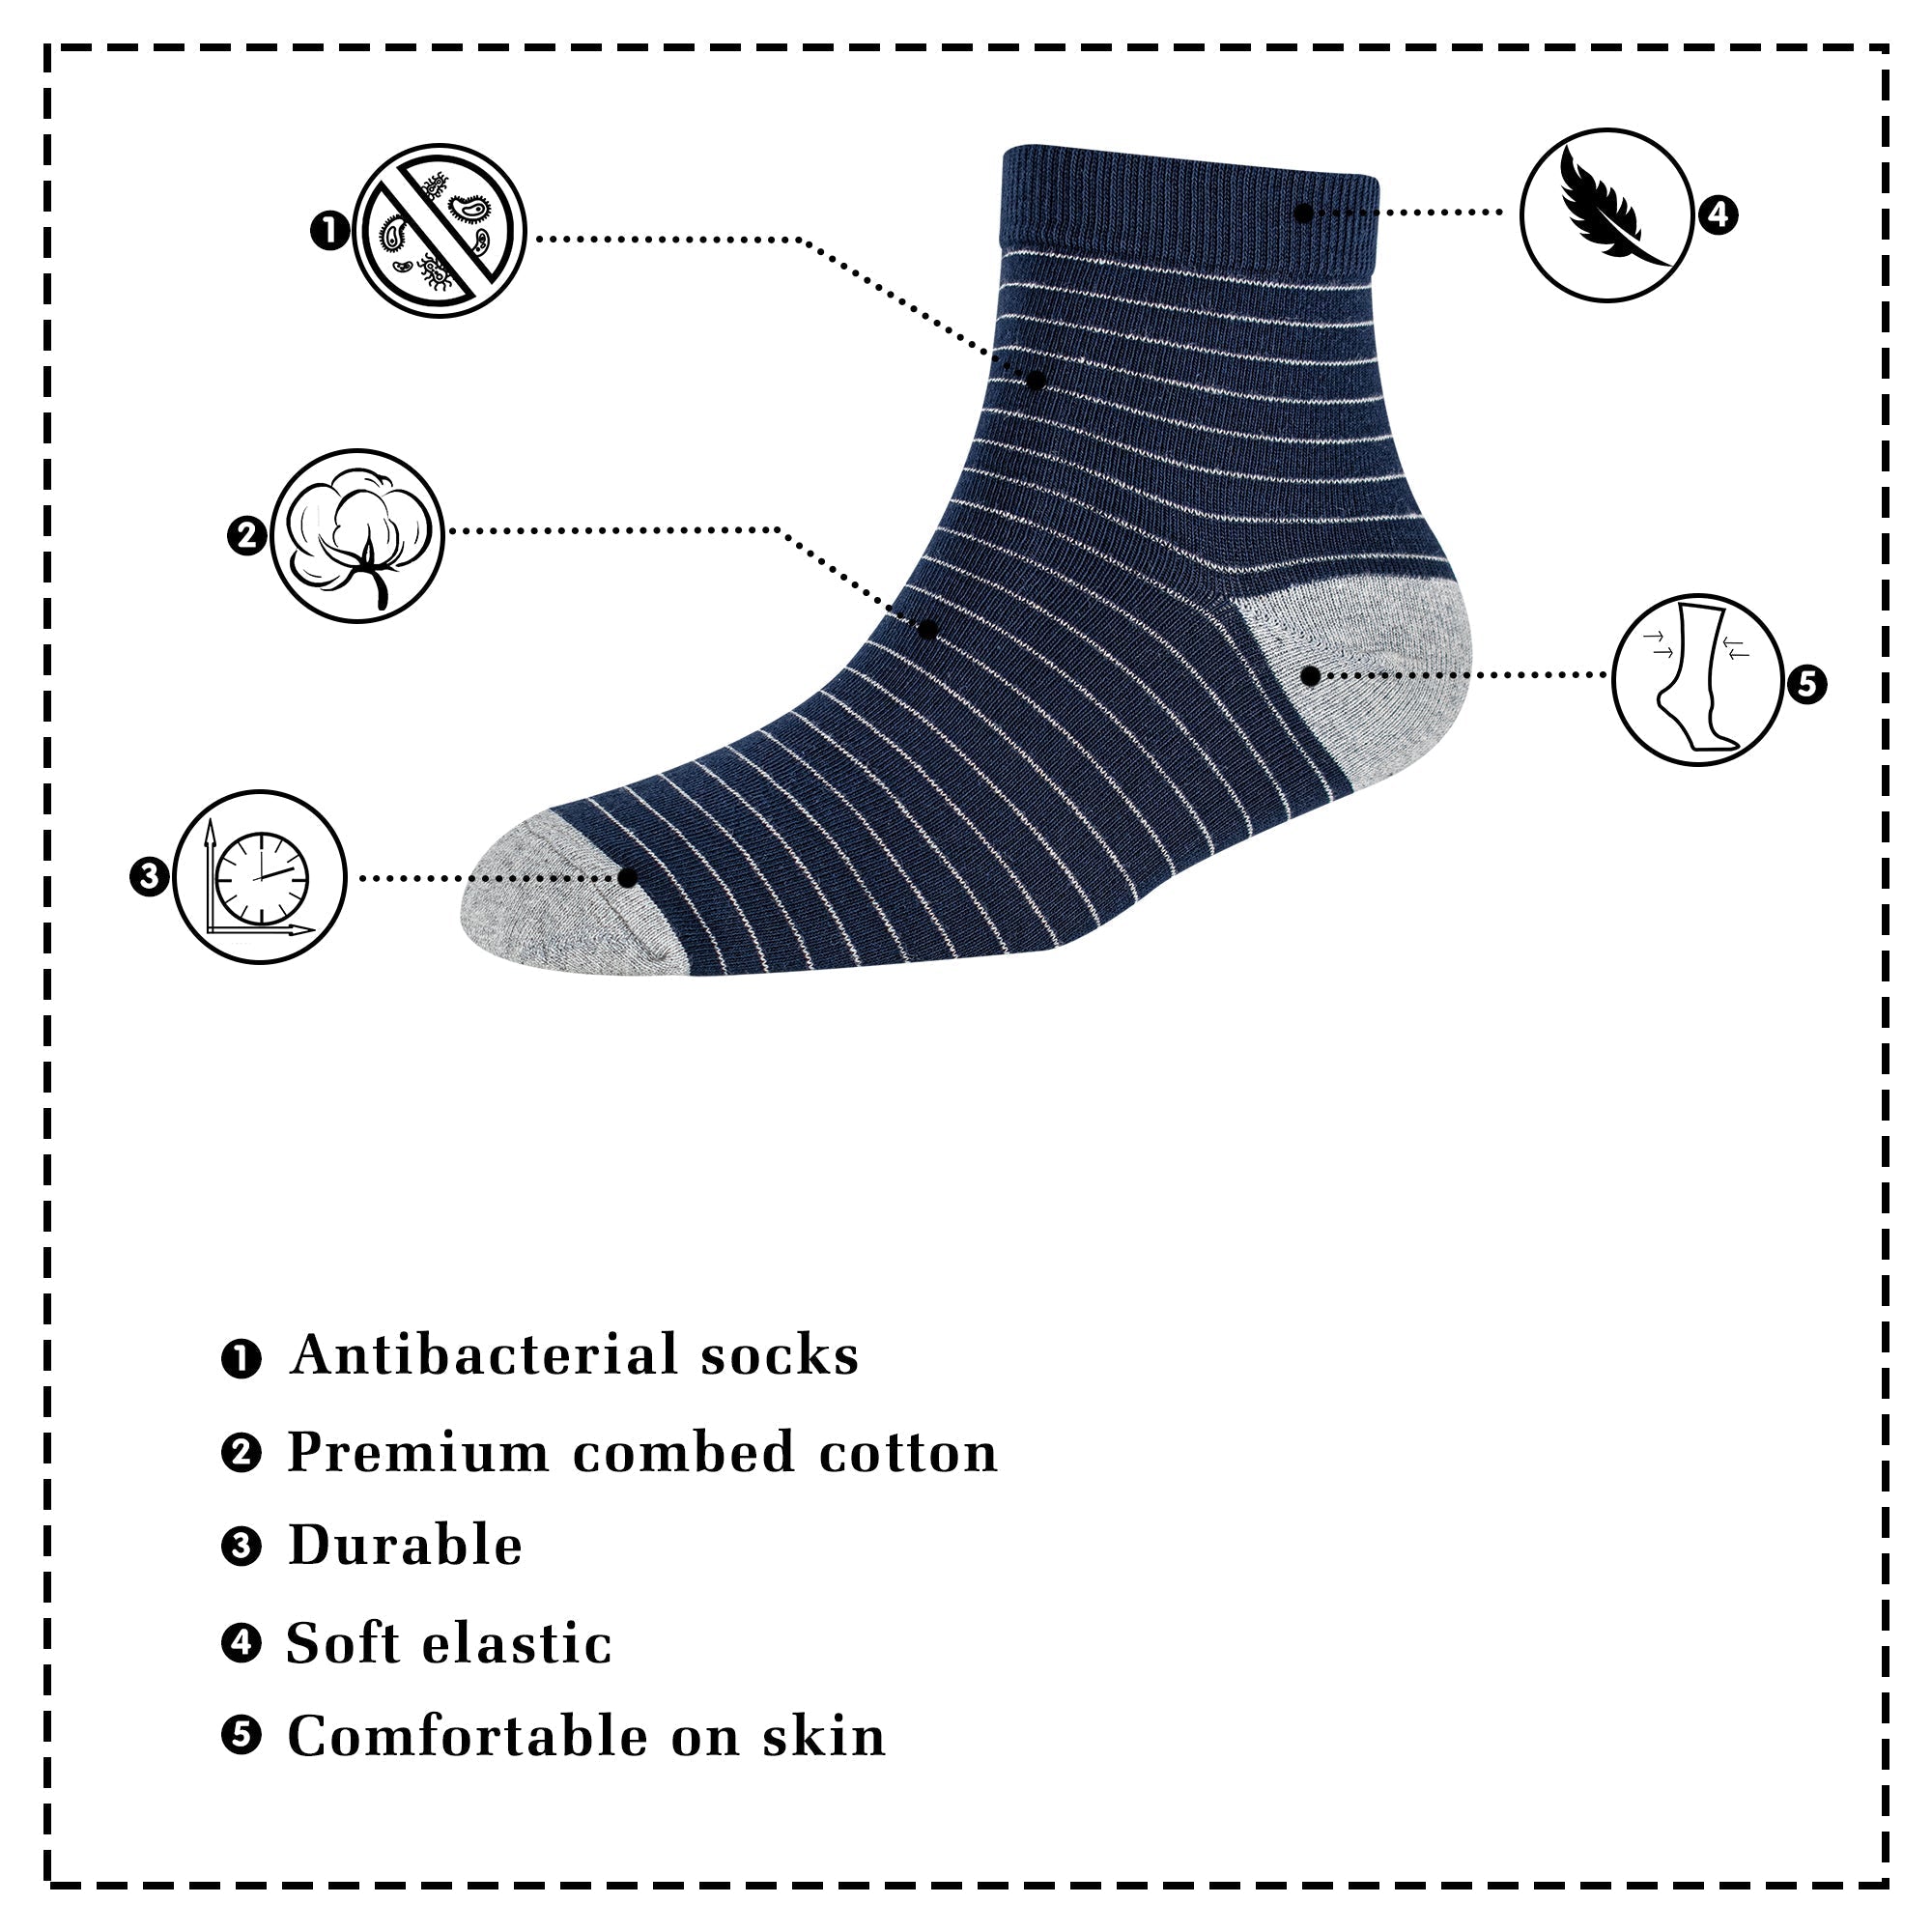 Men's AL037 Pack of 3 Ankle Socks